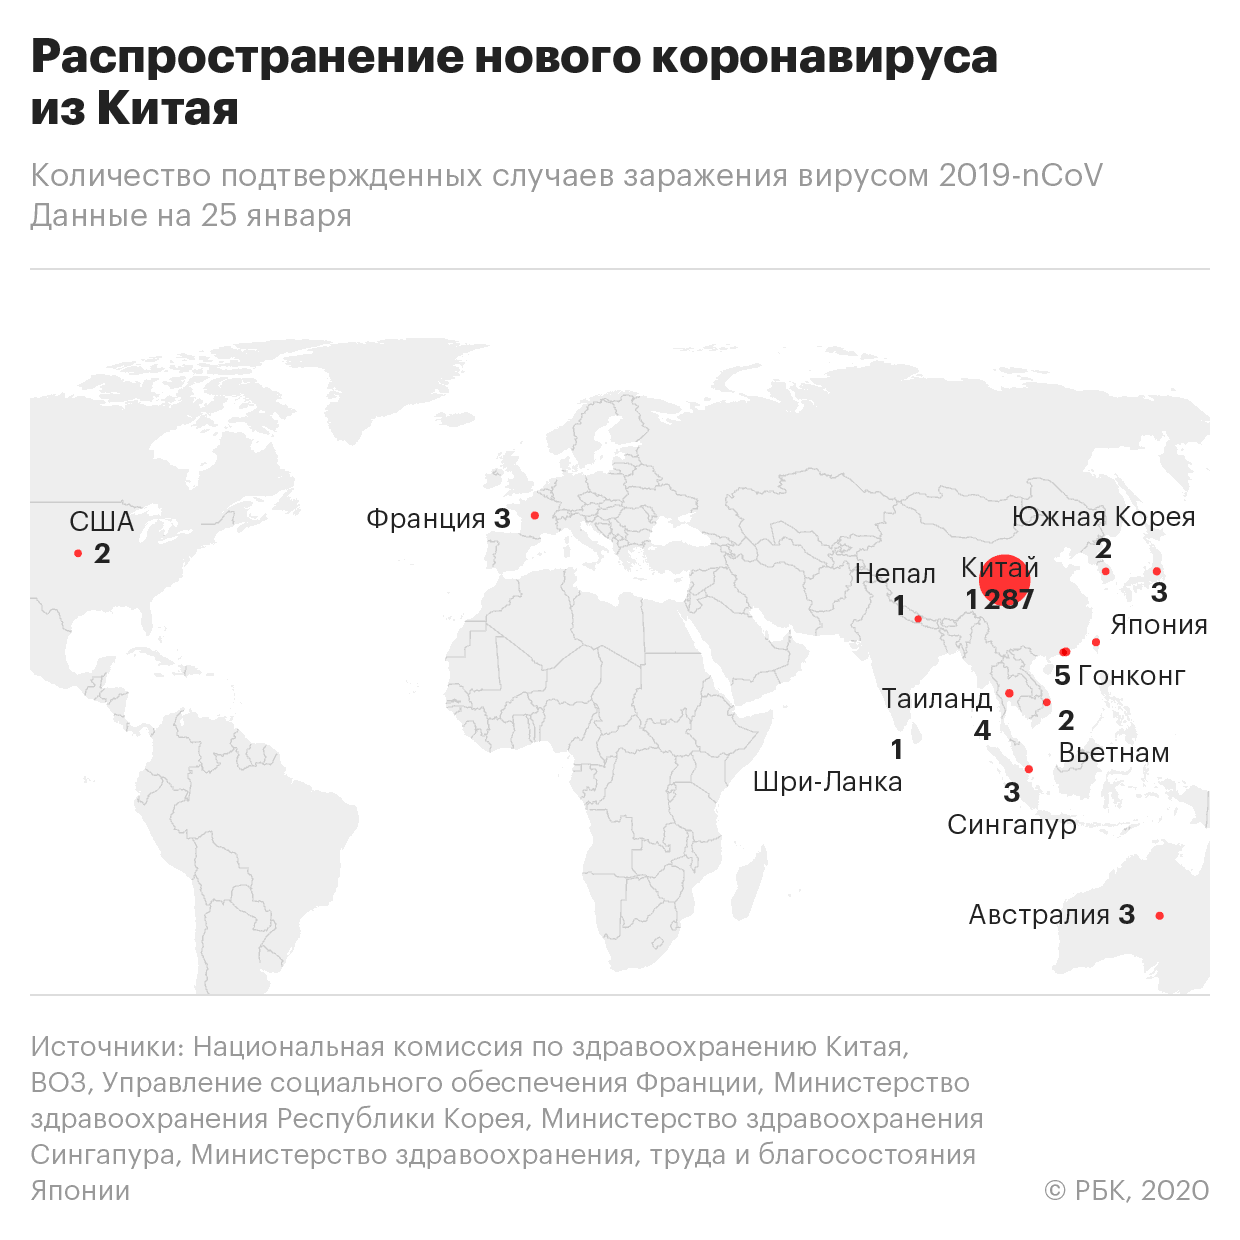 Россия направит в Китай 2 млн медицинских масок